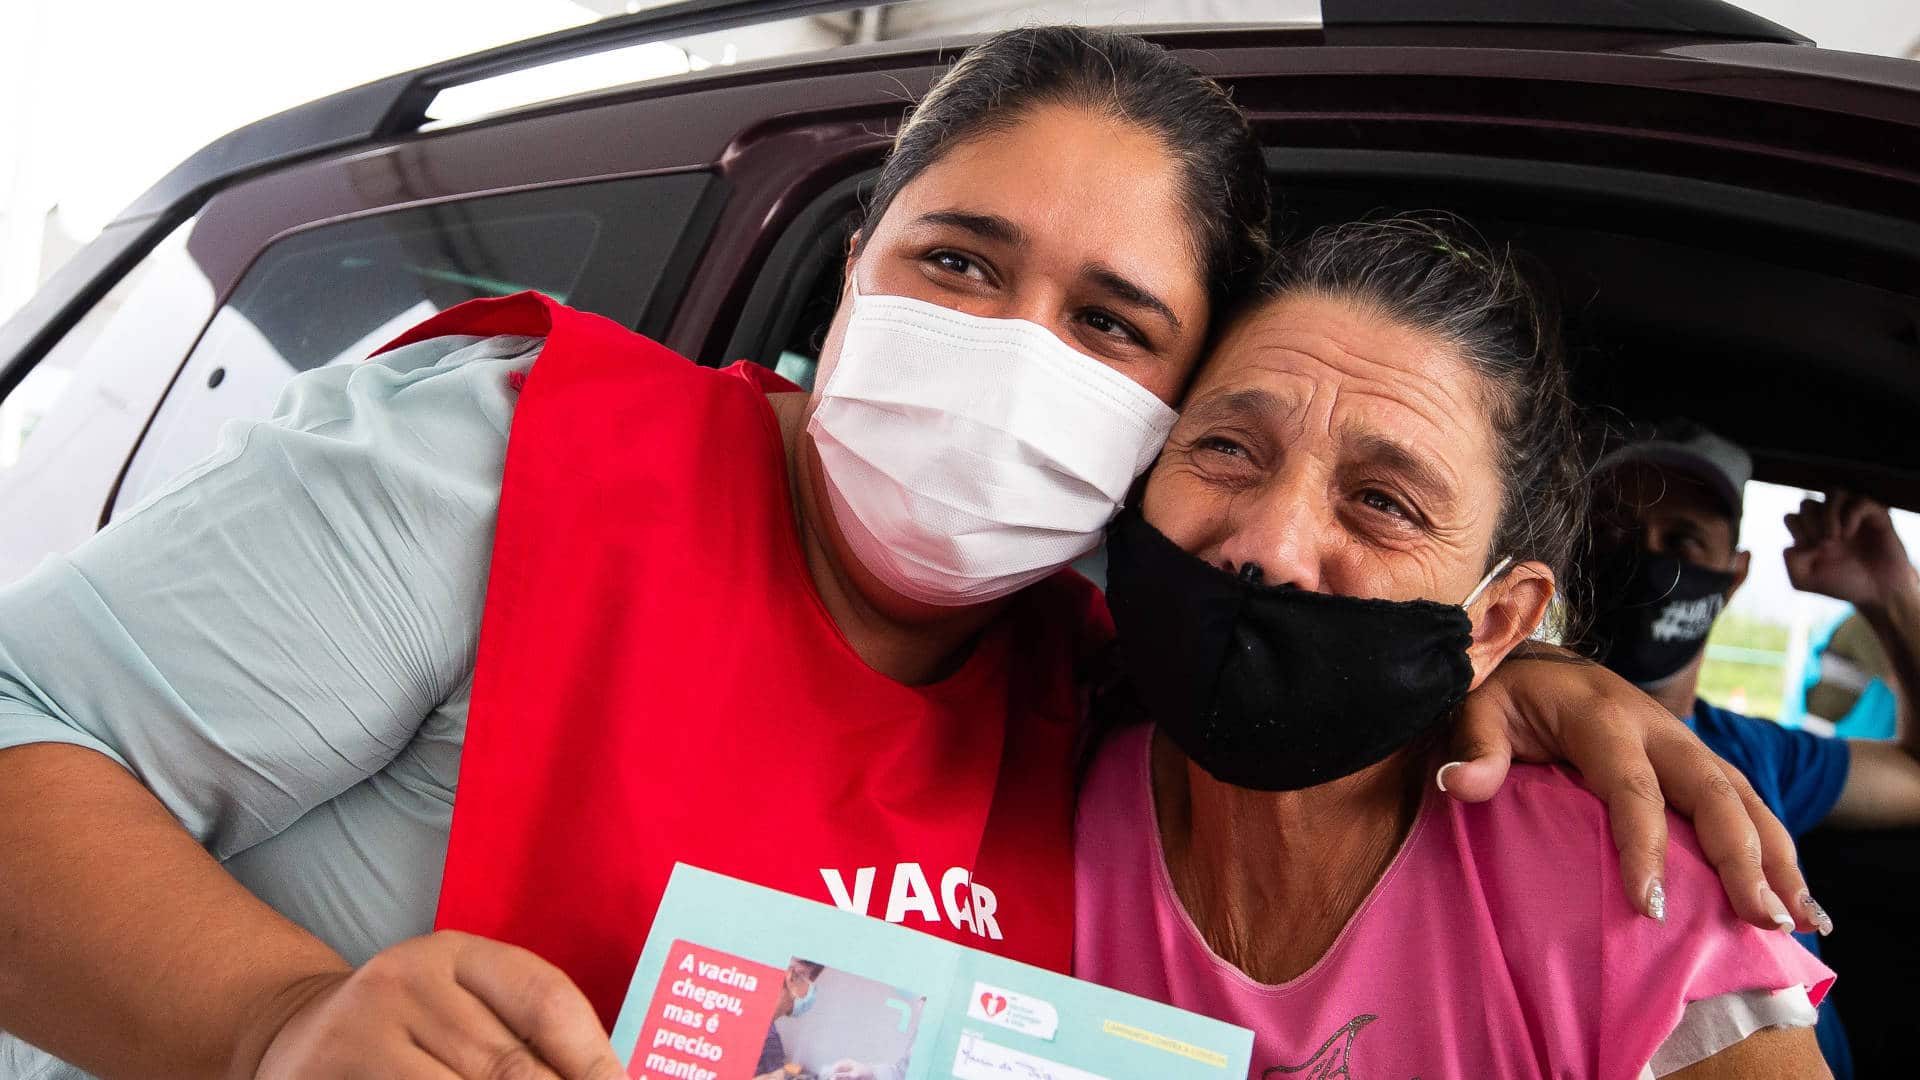 Maria de Fátima Moreira (R) receives a Covid-19 vaccine dose from her daughter, Andreia Moreira Pereira da Costa (L), who is a nurse in Maricá, Brazil, on April 27 2021.